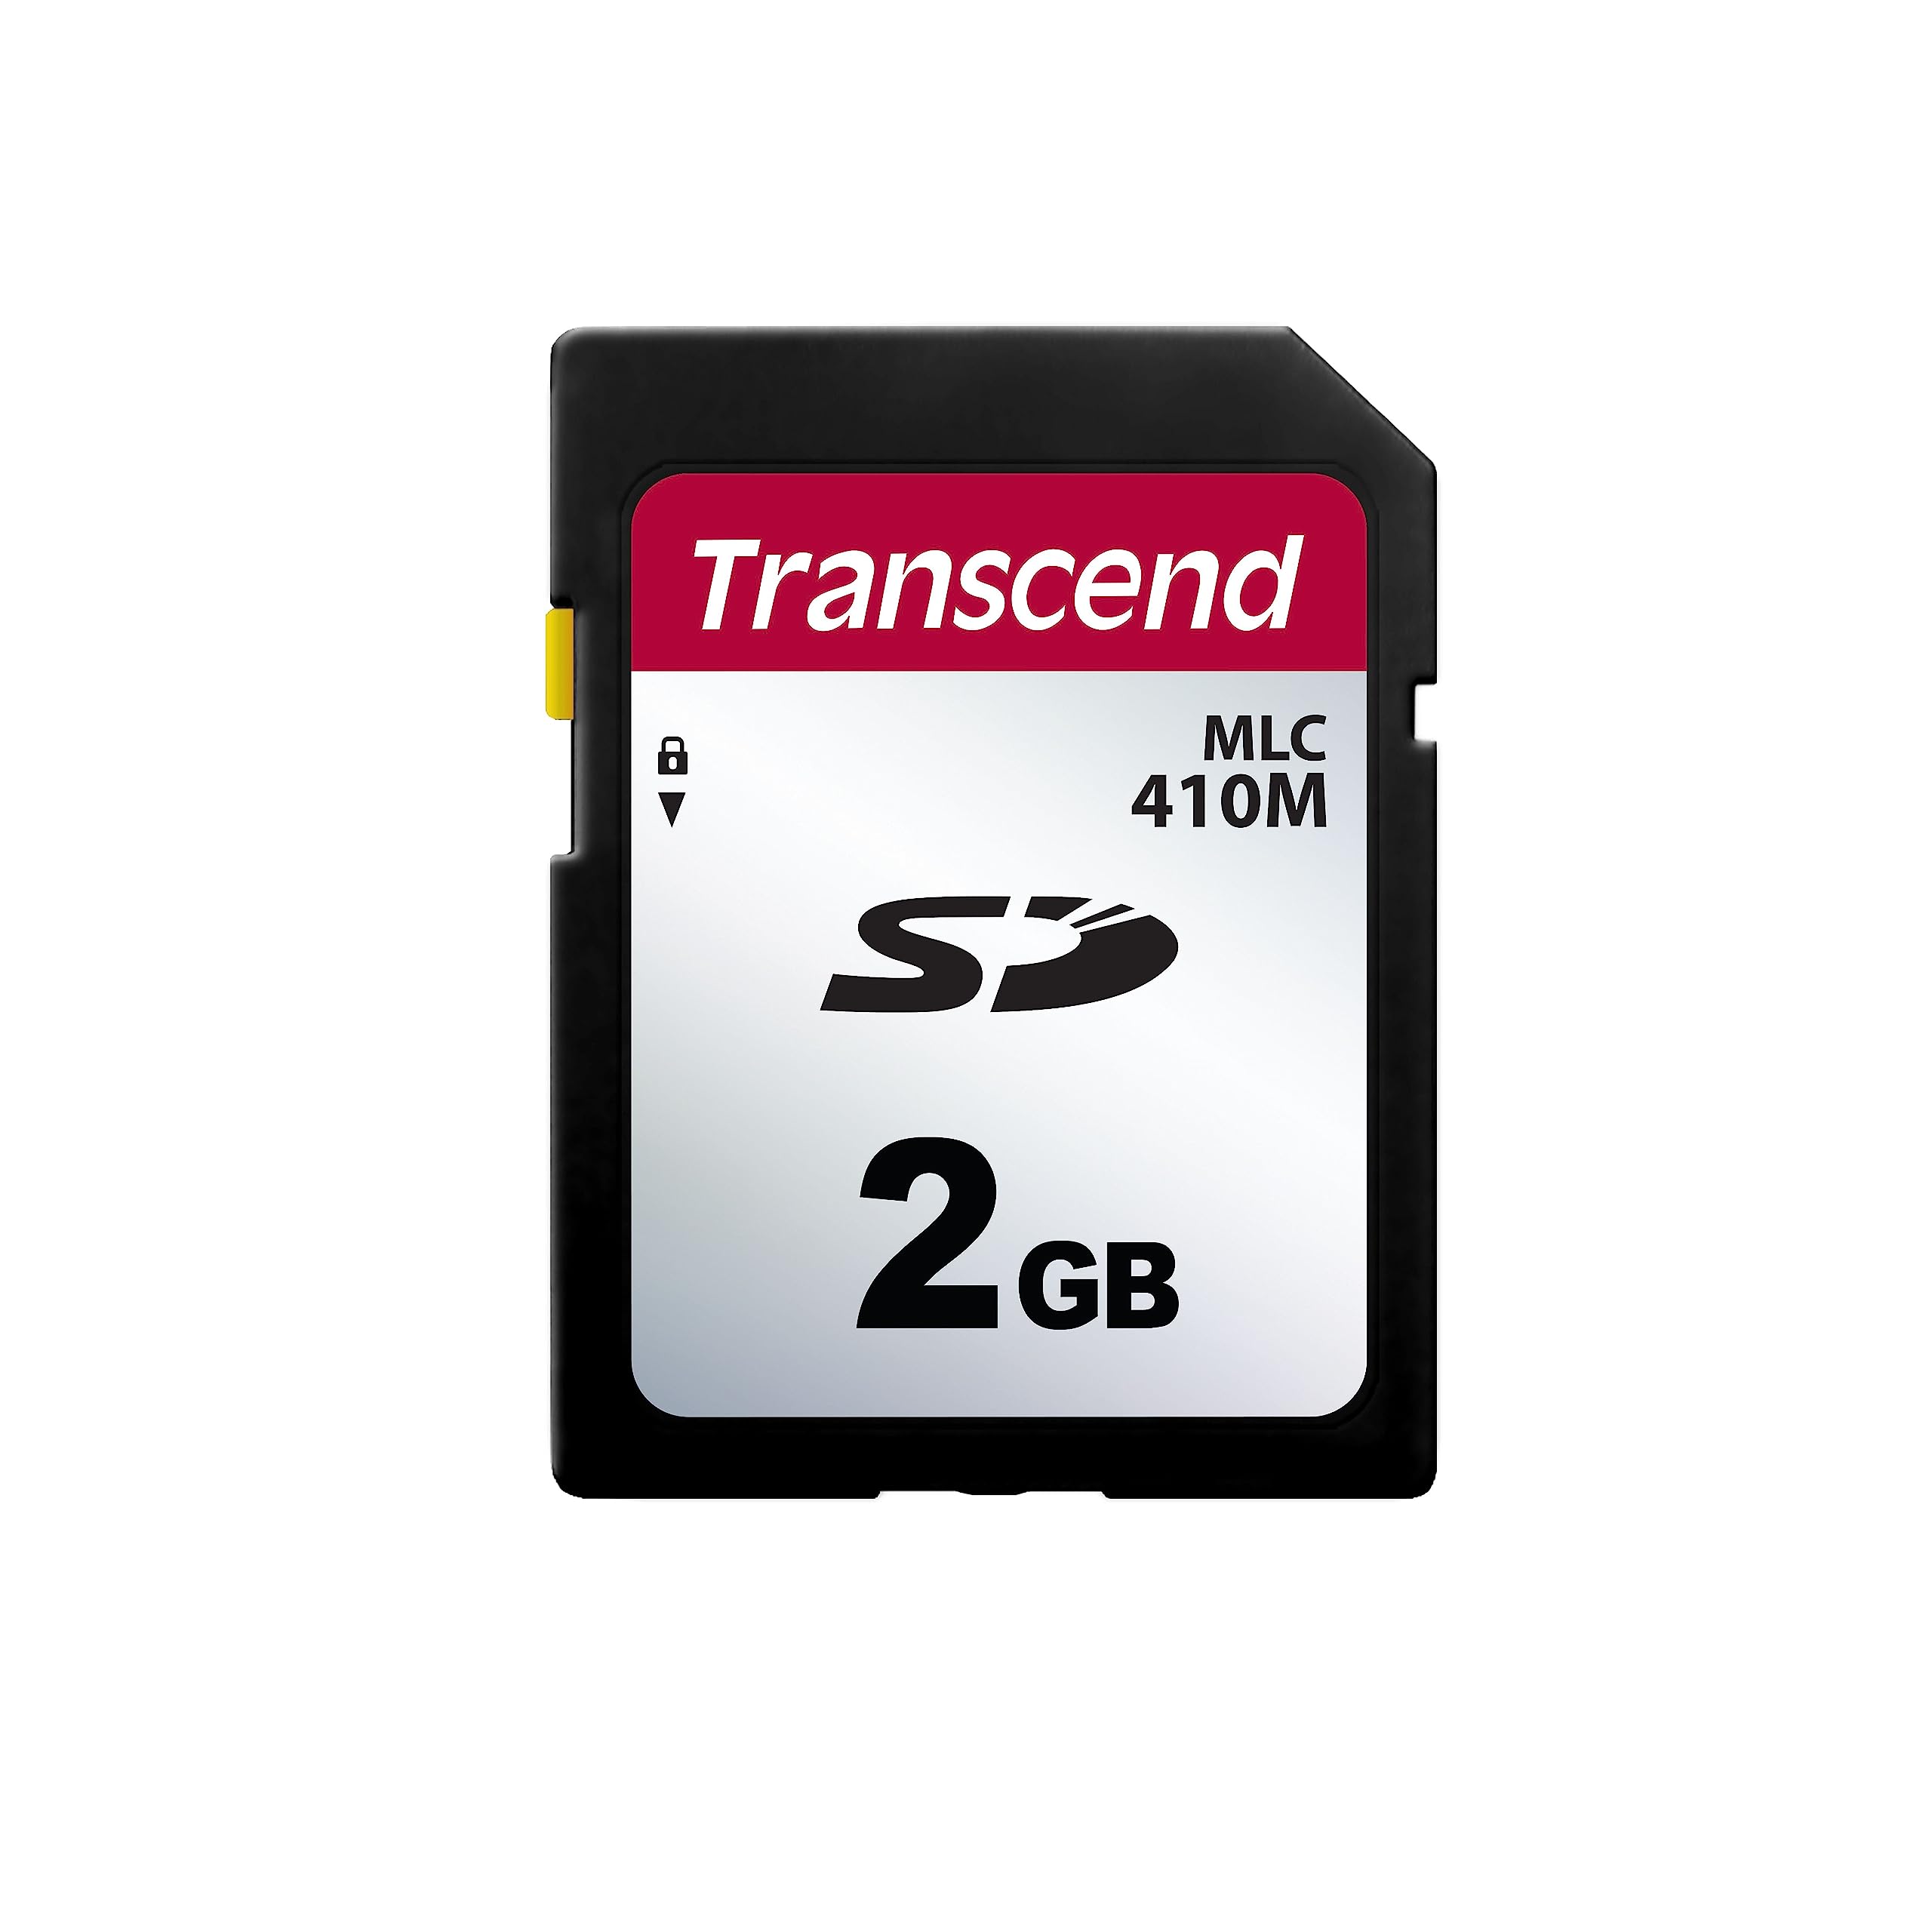 トランセンドジャパン Transcend法人(ビジネス)向け 業務用/産業用SDカード 2GB Samsung製2D (2bit)MLC NAND採用 高耐久 2年保証 TS2GSDC410M